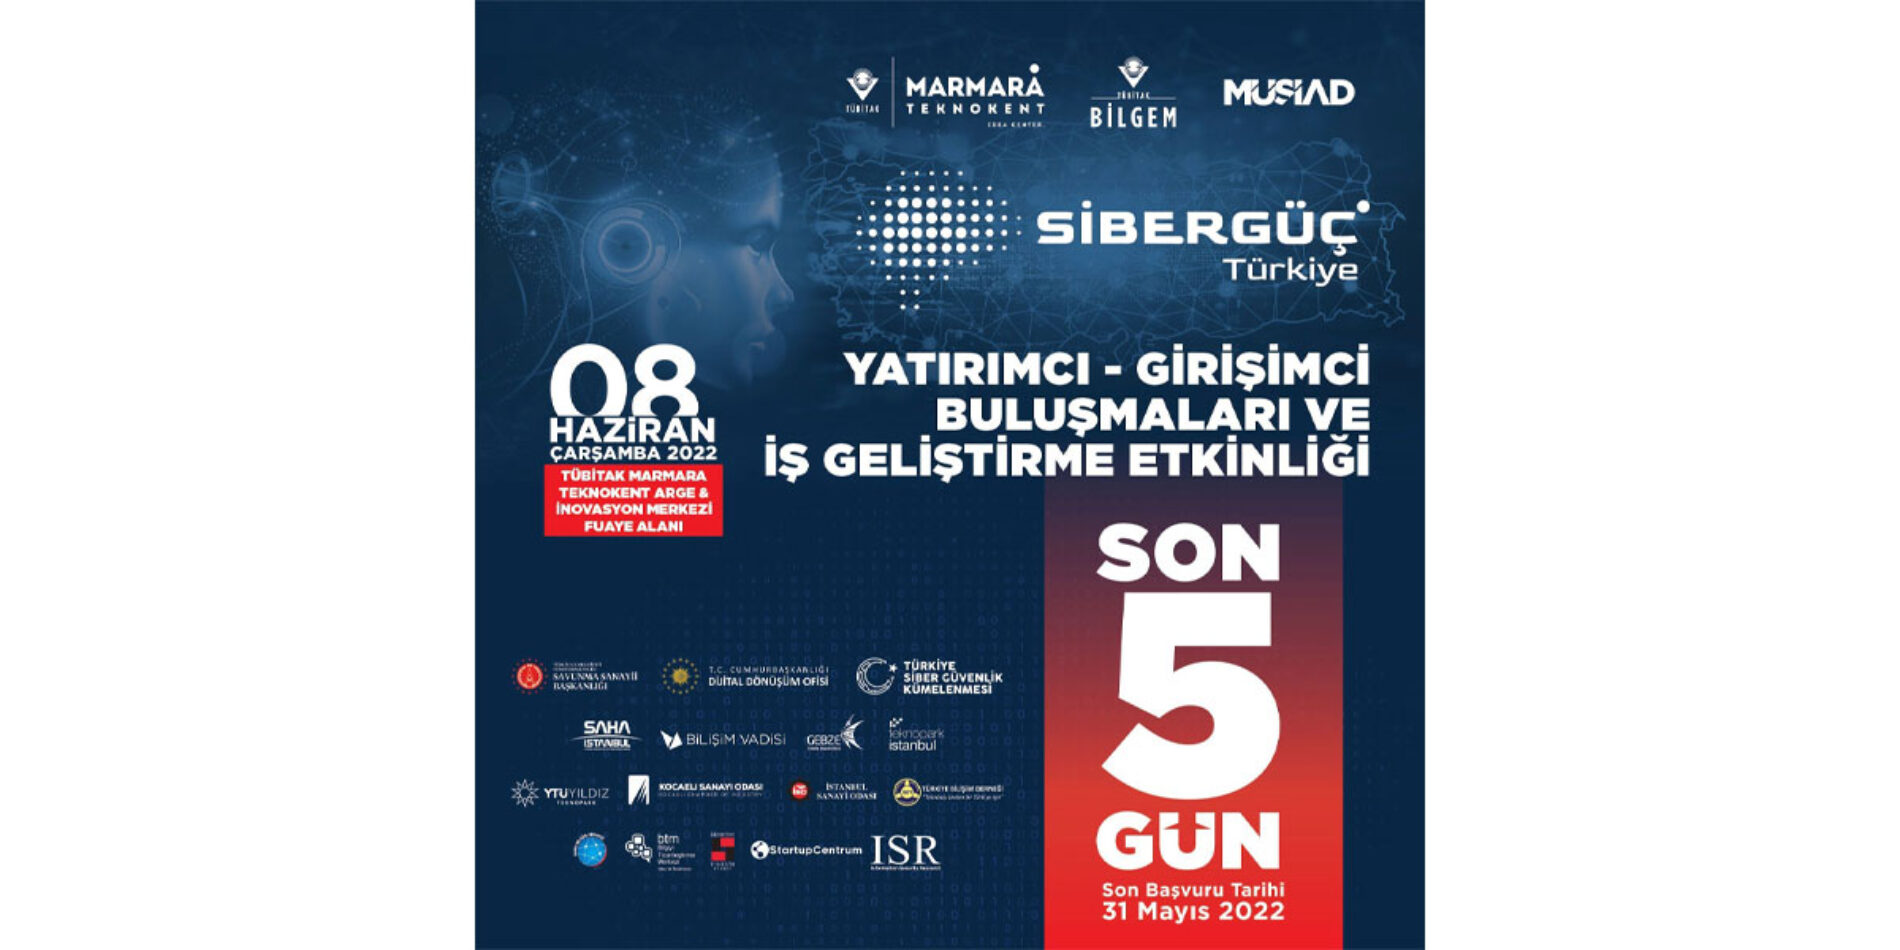 Türkiye Bilişim Derneği Olarak Desteklediğimiz “SİBERGÜÇ Türkiye” Etkinliğine Tüm Siber Güvenlik Paydaşlarını Beklemekteyiz